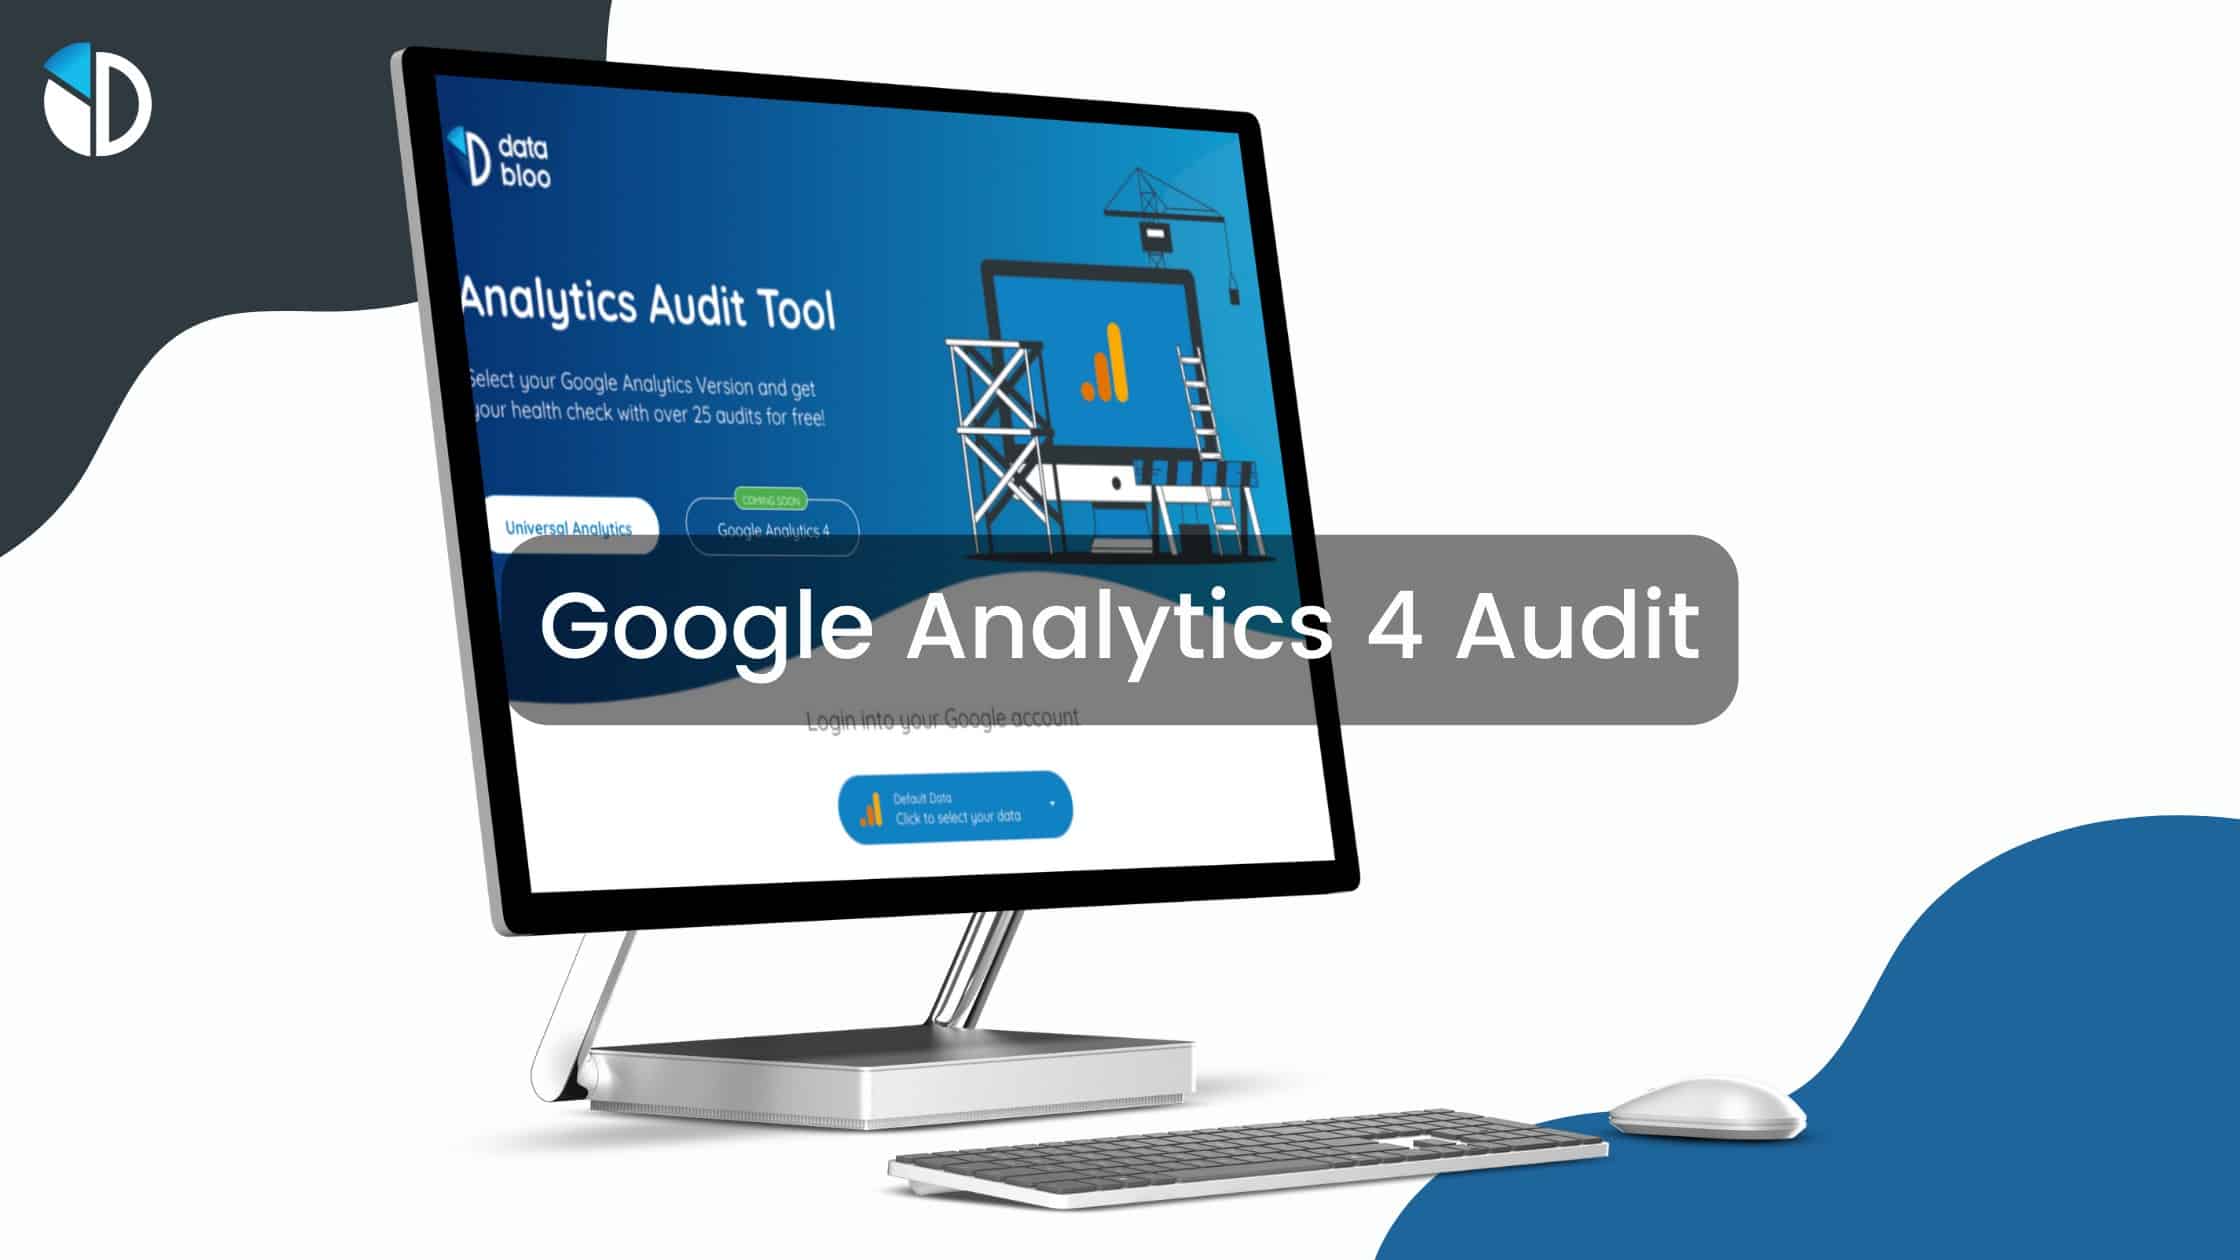 Free Google Analytics 4 Audit - Data Bloo